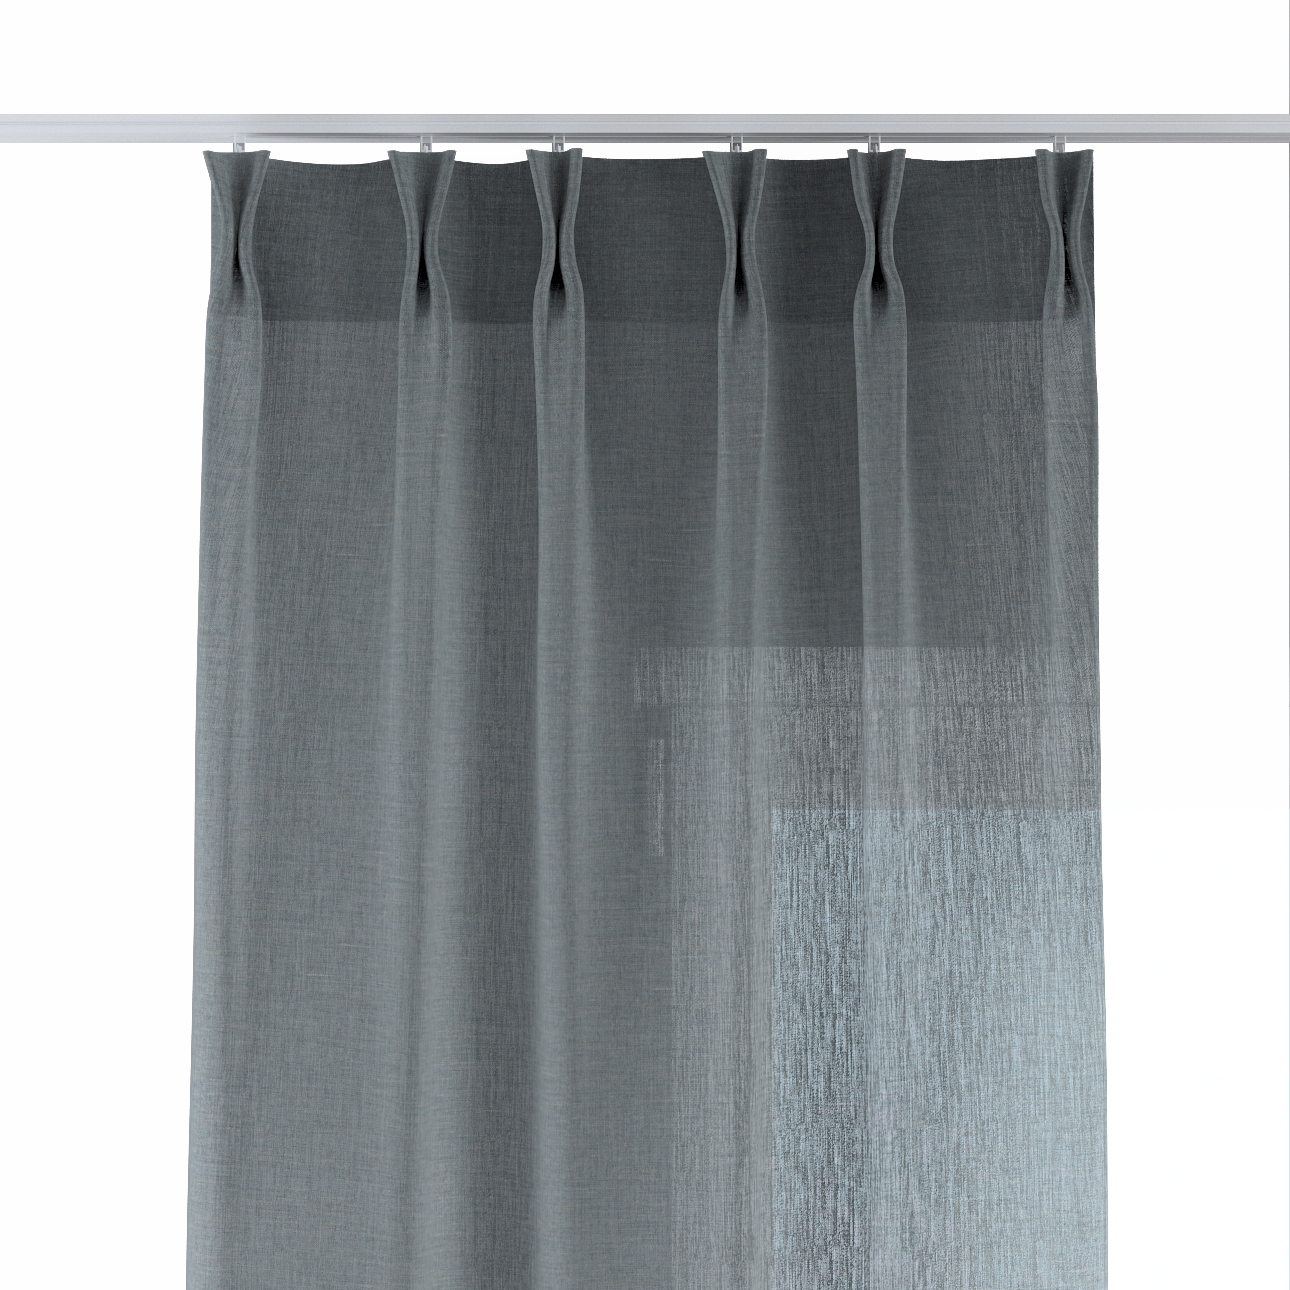 Vorhang mit flämischen 2-er Falten, salbeifarben, Delicate Premium (144-60) günstig online kaufen